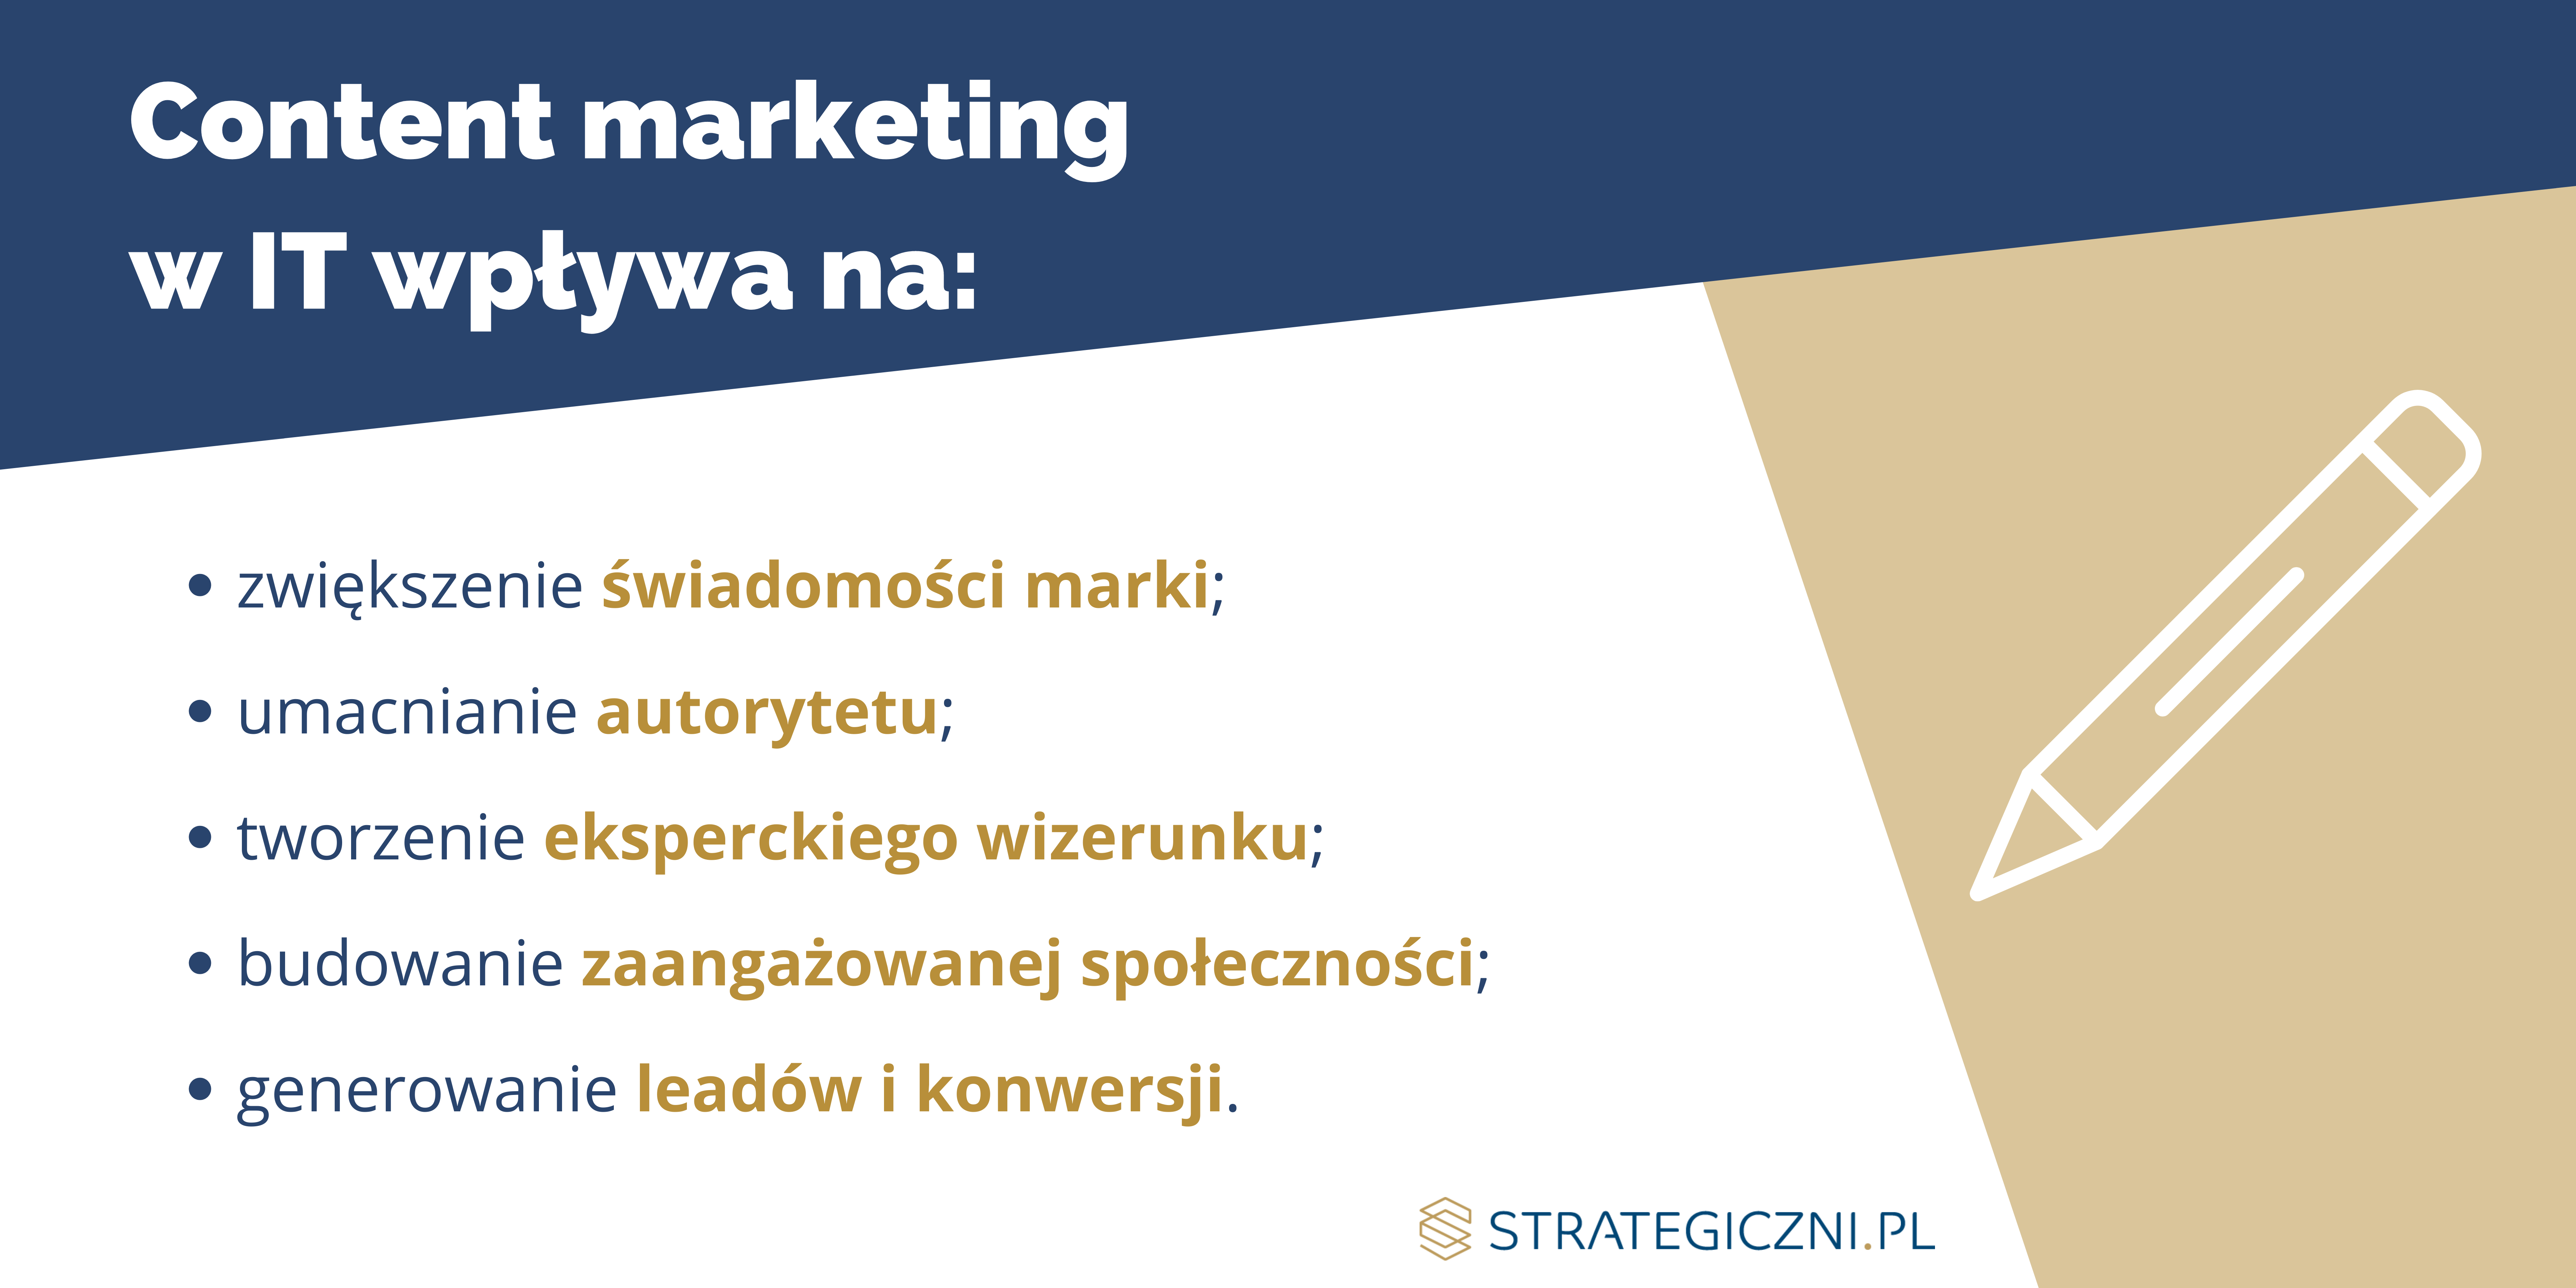 Infografika Strategiczni.pl przedstawiająca korzyści content marketingu dla firm IT